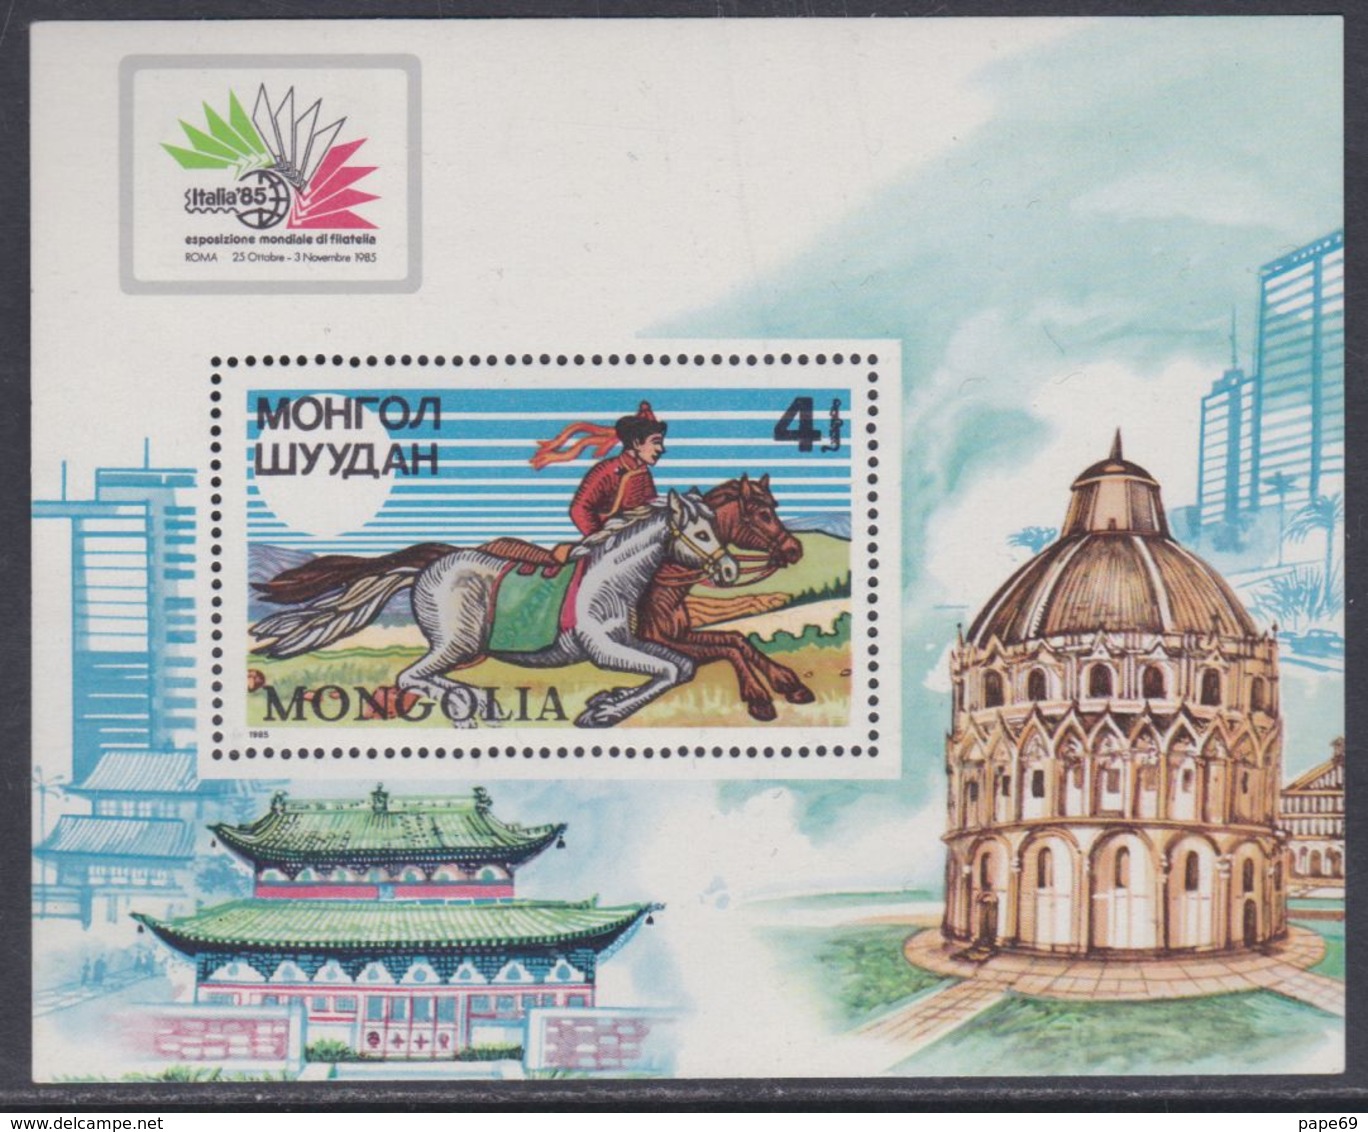 Mongolie BF N° 108 XX "Italia'85", Exposition Philatélique Internationale, Le Bloc Sans Charnière, TB - Mongolie